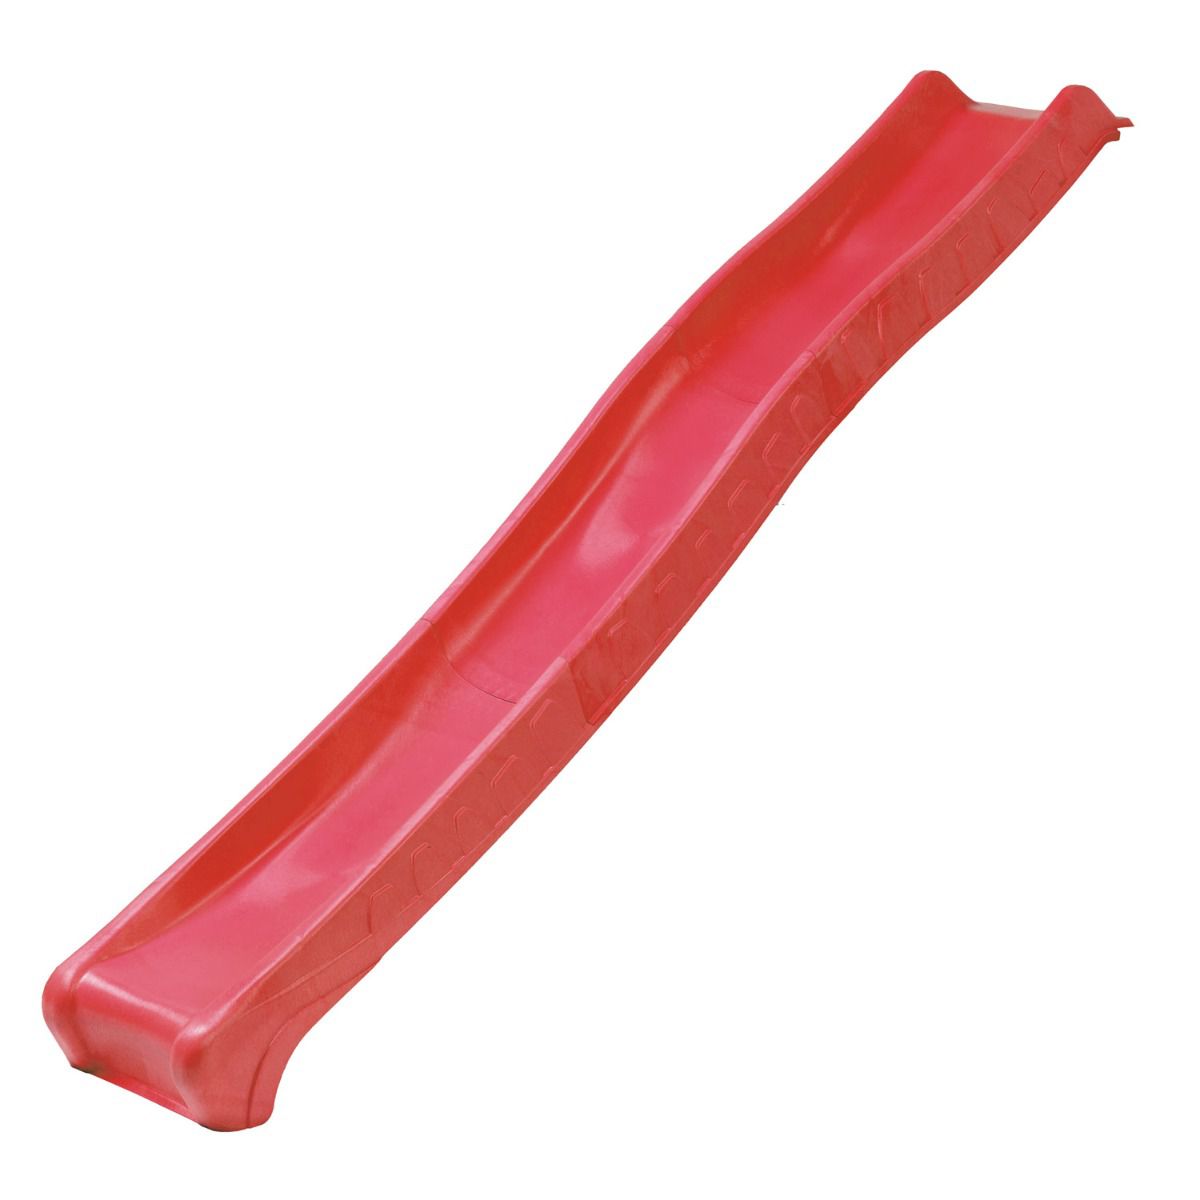 Rutsche mit Wasseranschluss - Länge 2,87 m - Farbe: Rot